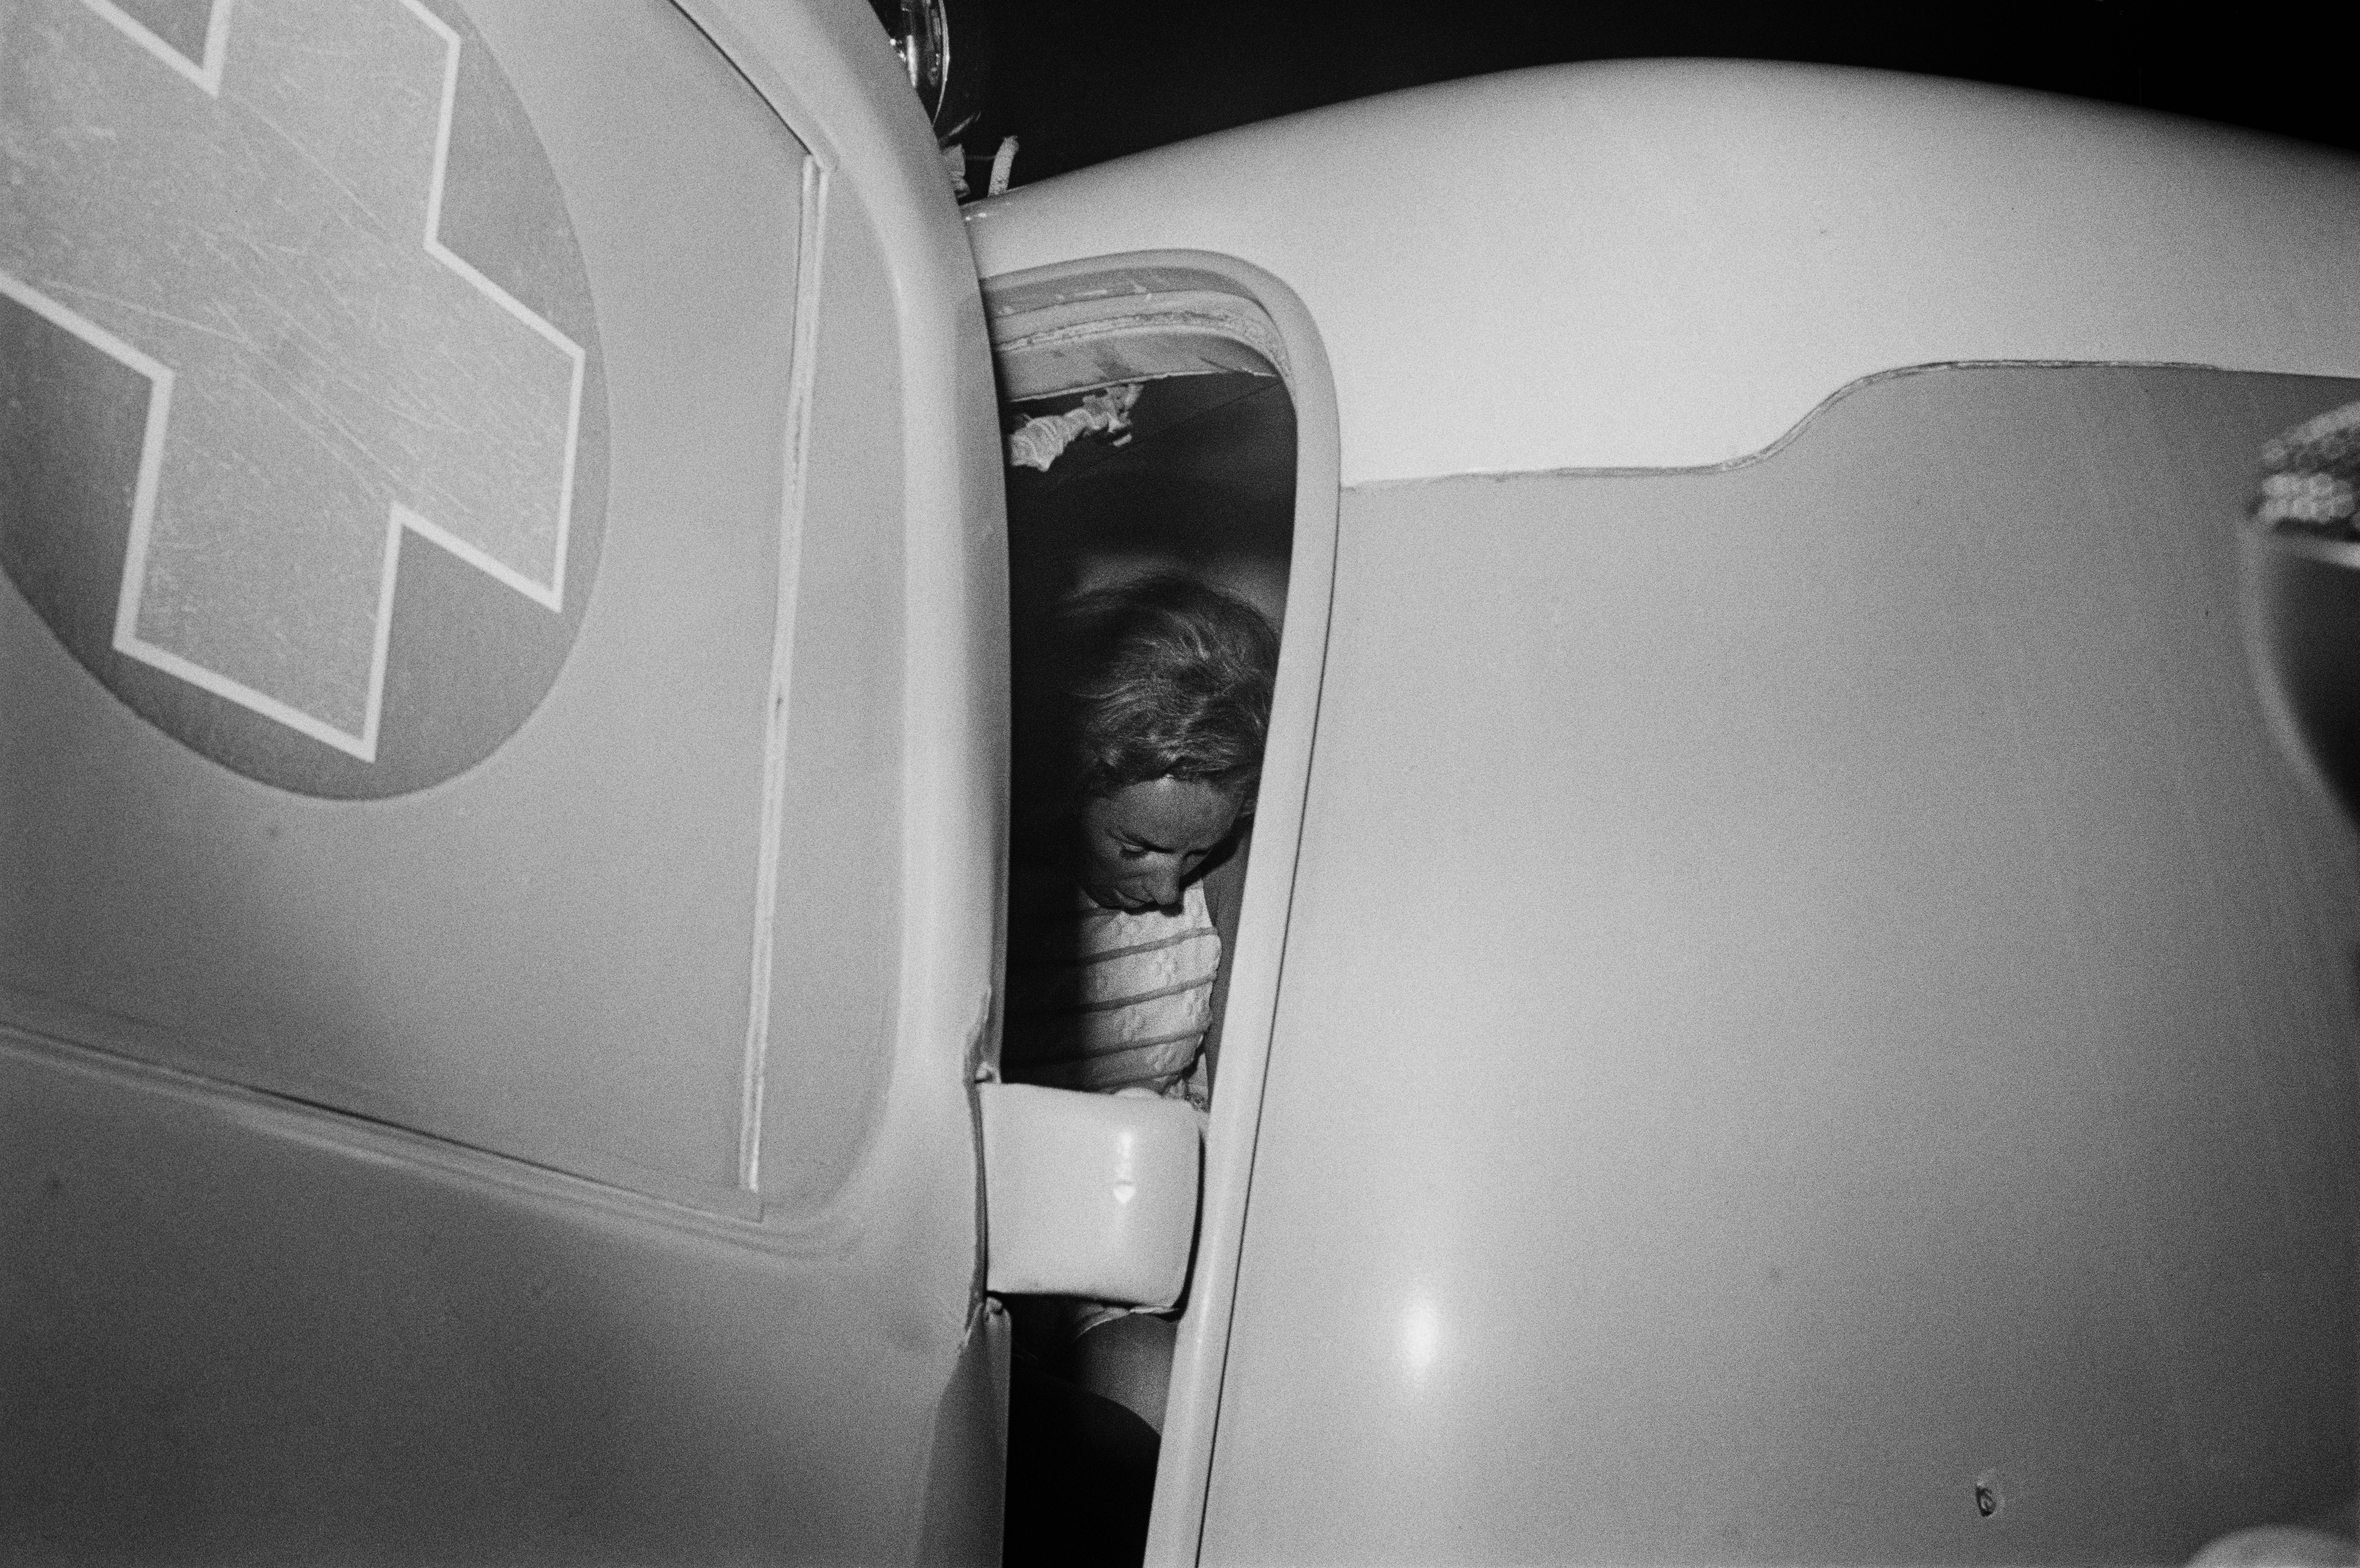 Ethel Kennedy in an ambulance 621